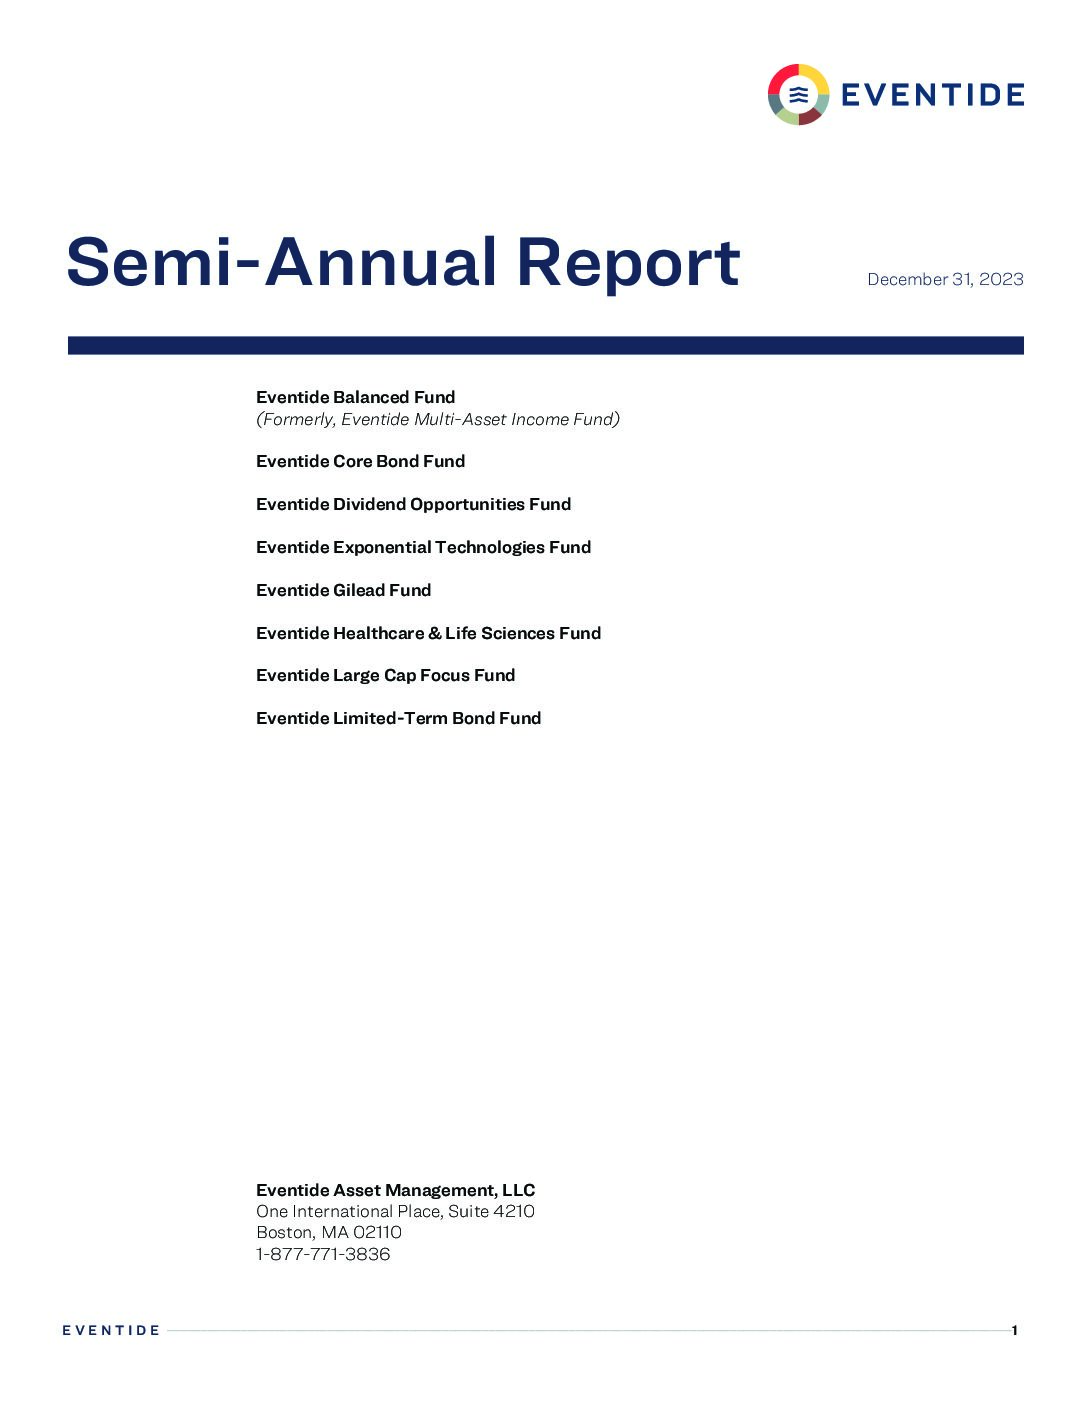 Shareholder Reports (3/31/2021 – 12/31/2023)